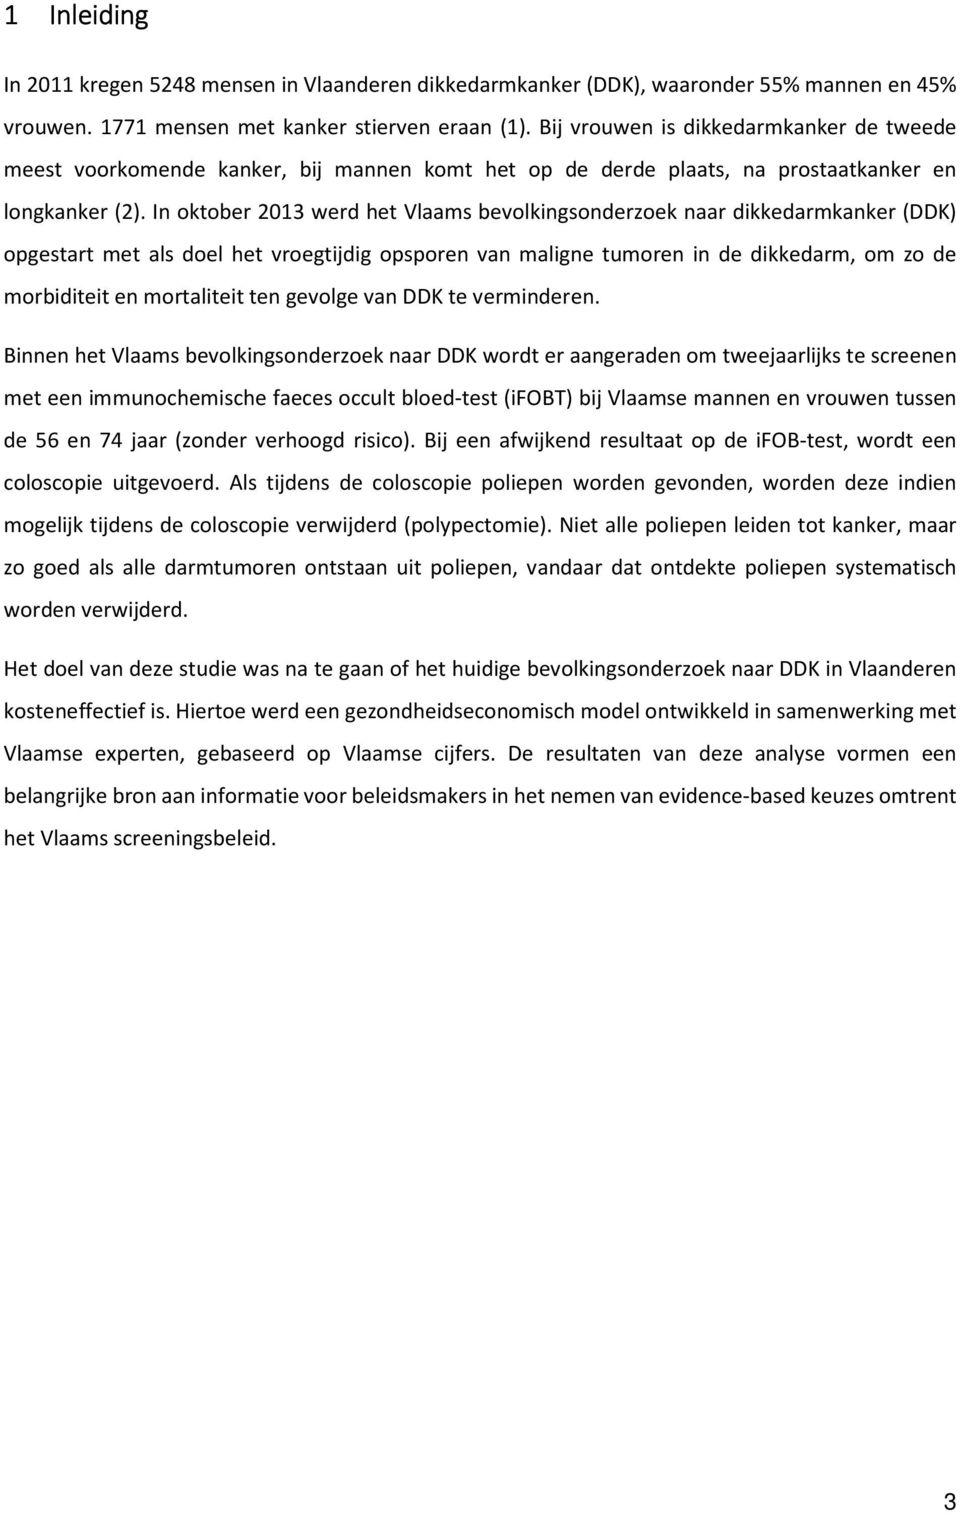 In oktober 2013 werd het Vlaams bevolkingsonderzoek naar dikkedarmkanker (DDK) opgestart met als doel het vroegtijdig opsporen van maligne tumoren in de dikkedarm, om zo de morbiditeit en mortaliteit